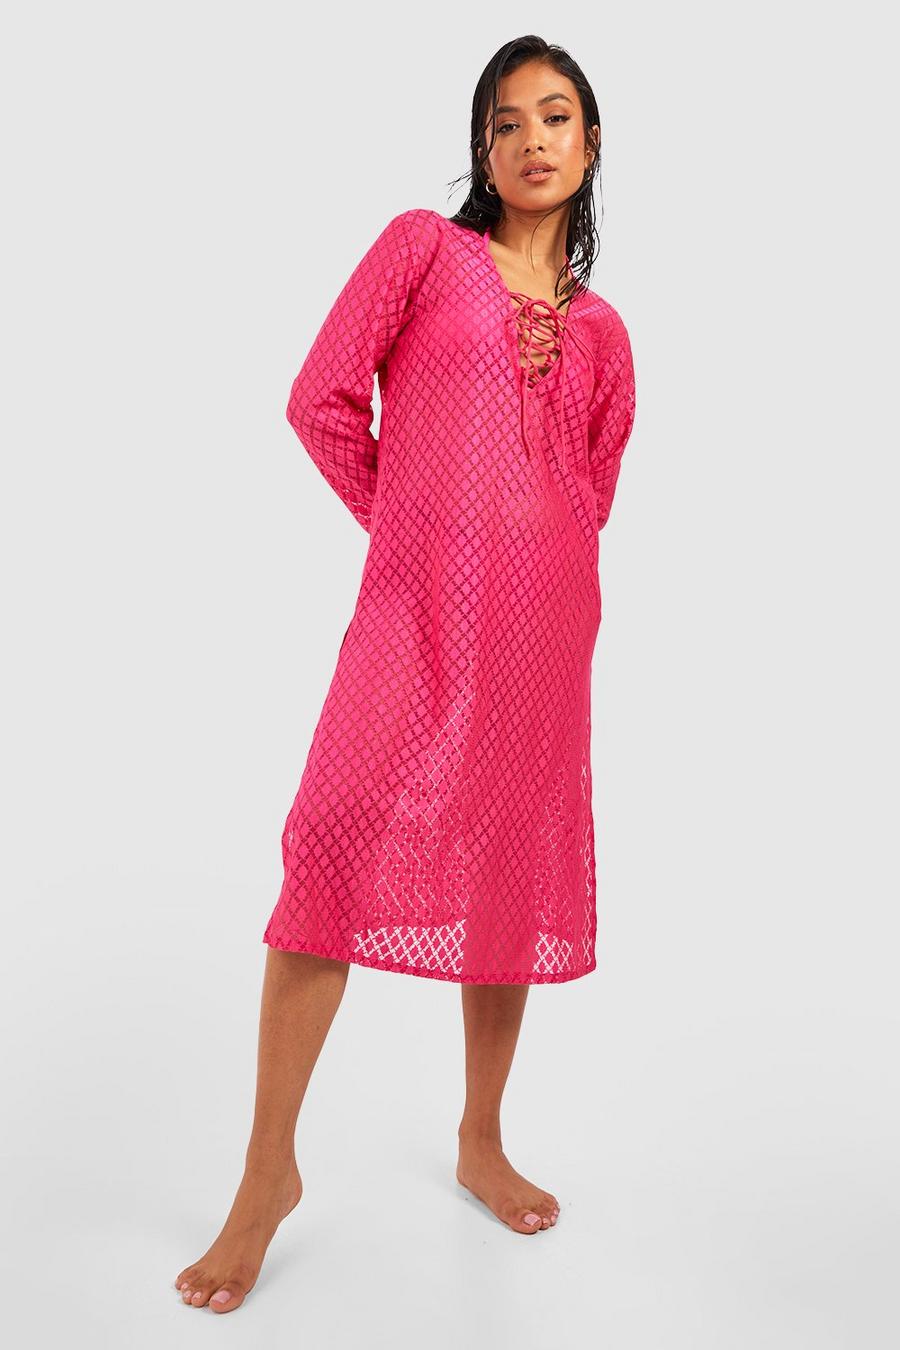 Petite - Robe de plage en crochet à lacets, Hot pink